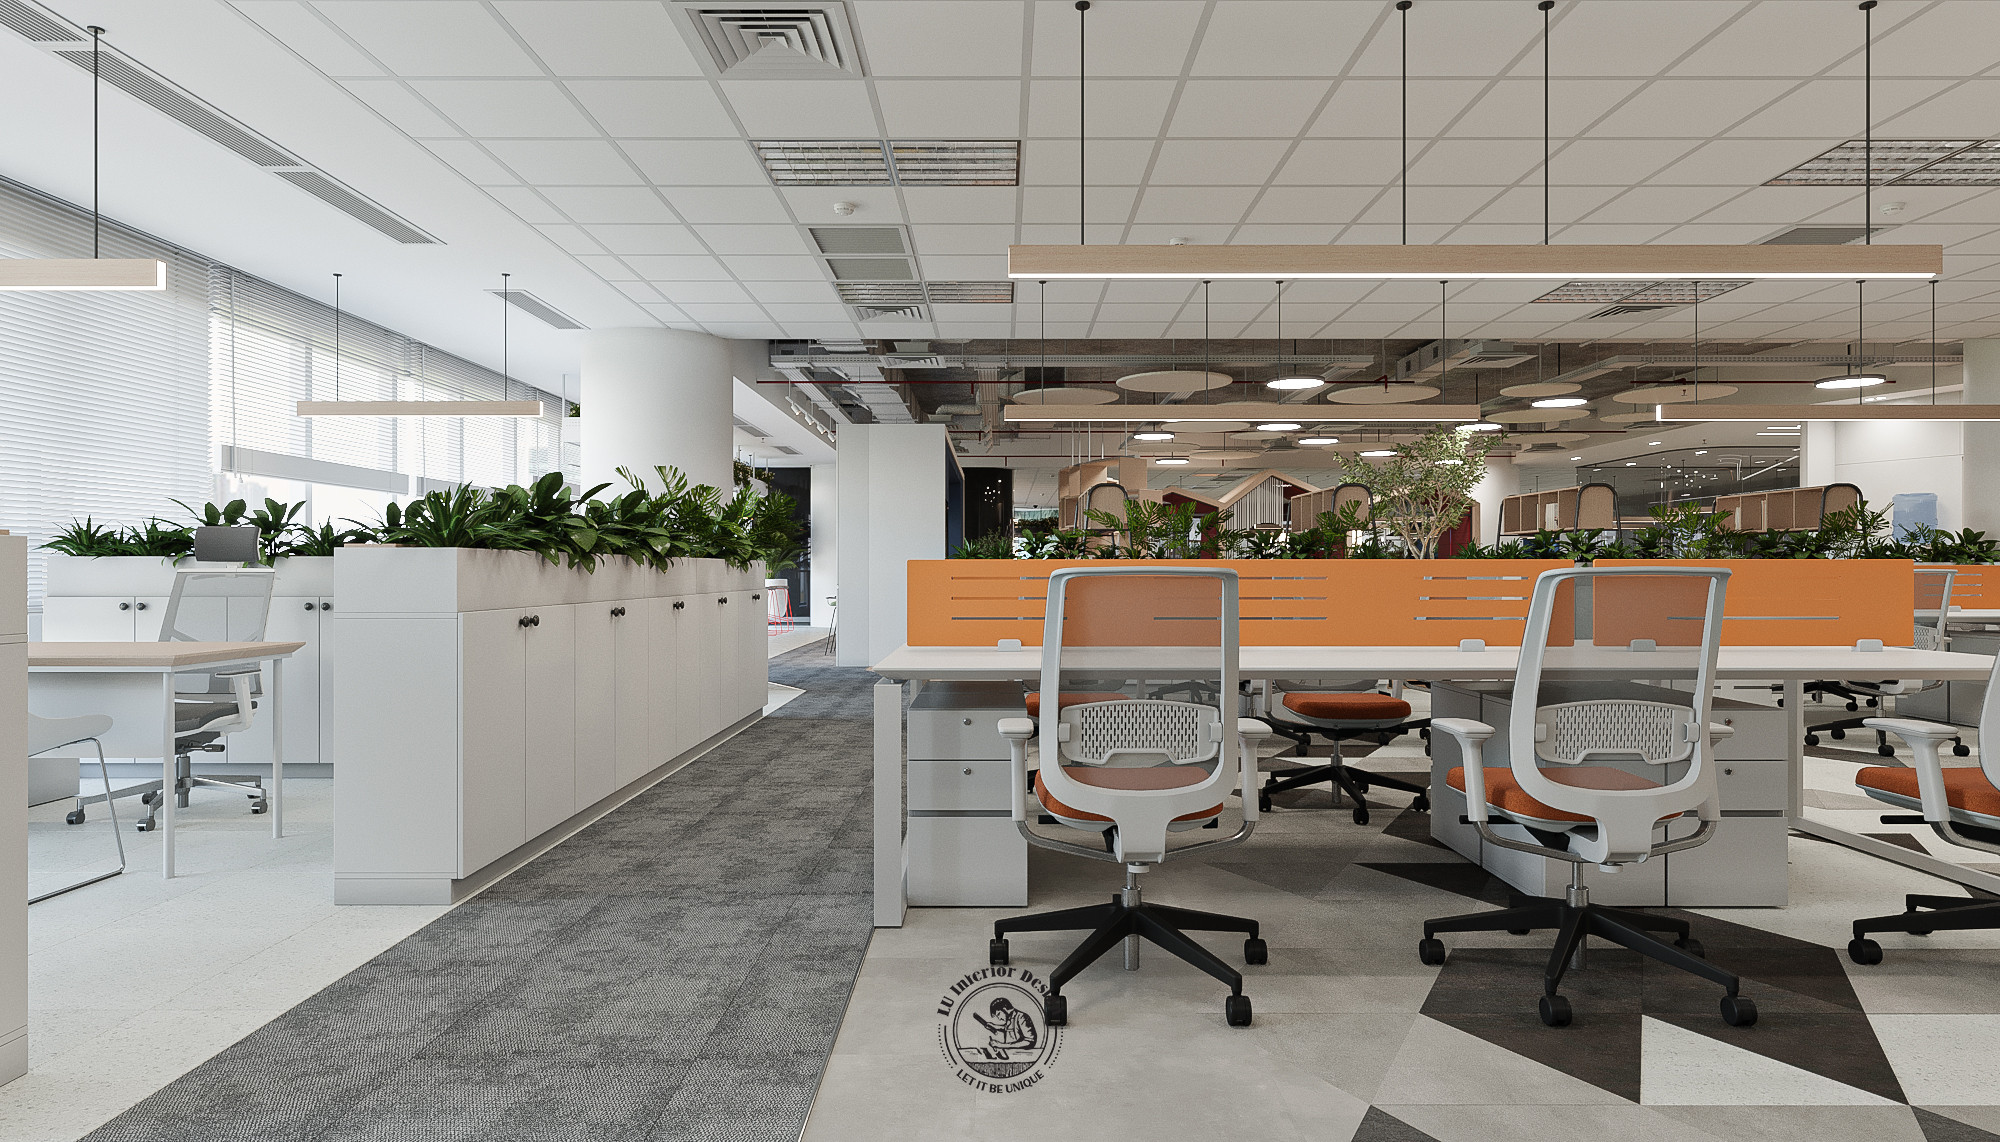 Thi công nội thất văn phòng xanh mang lại lợi ích tối ưu cho doanh nghiệp | LU Design thực hiện.